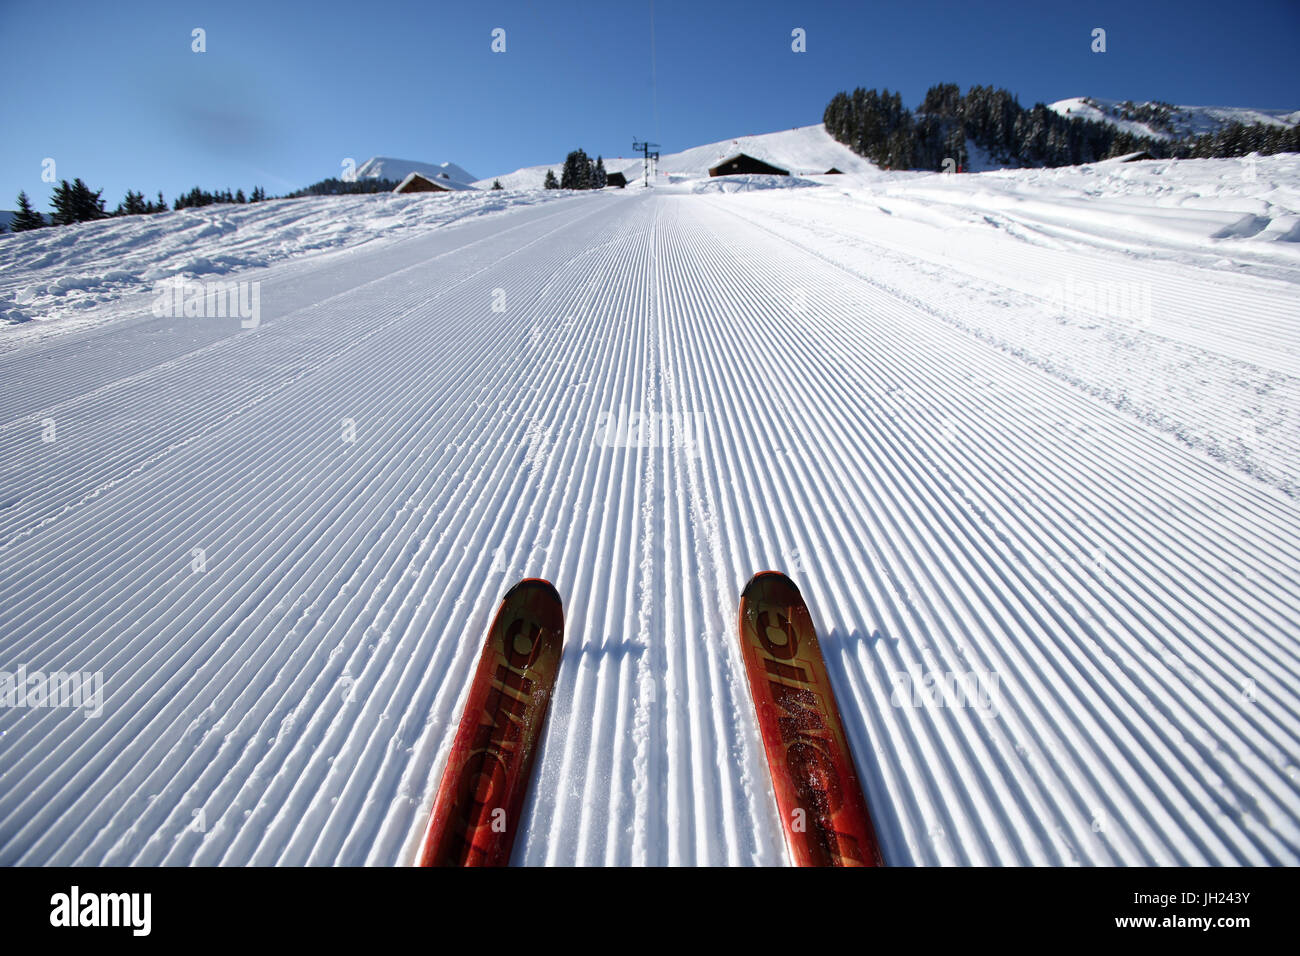 French Alps. Red pair of ski in snow. Groomed Ski Piste. France. Stock Photo